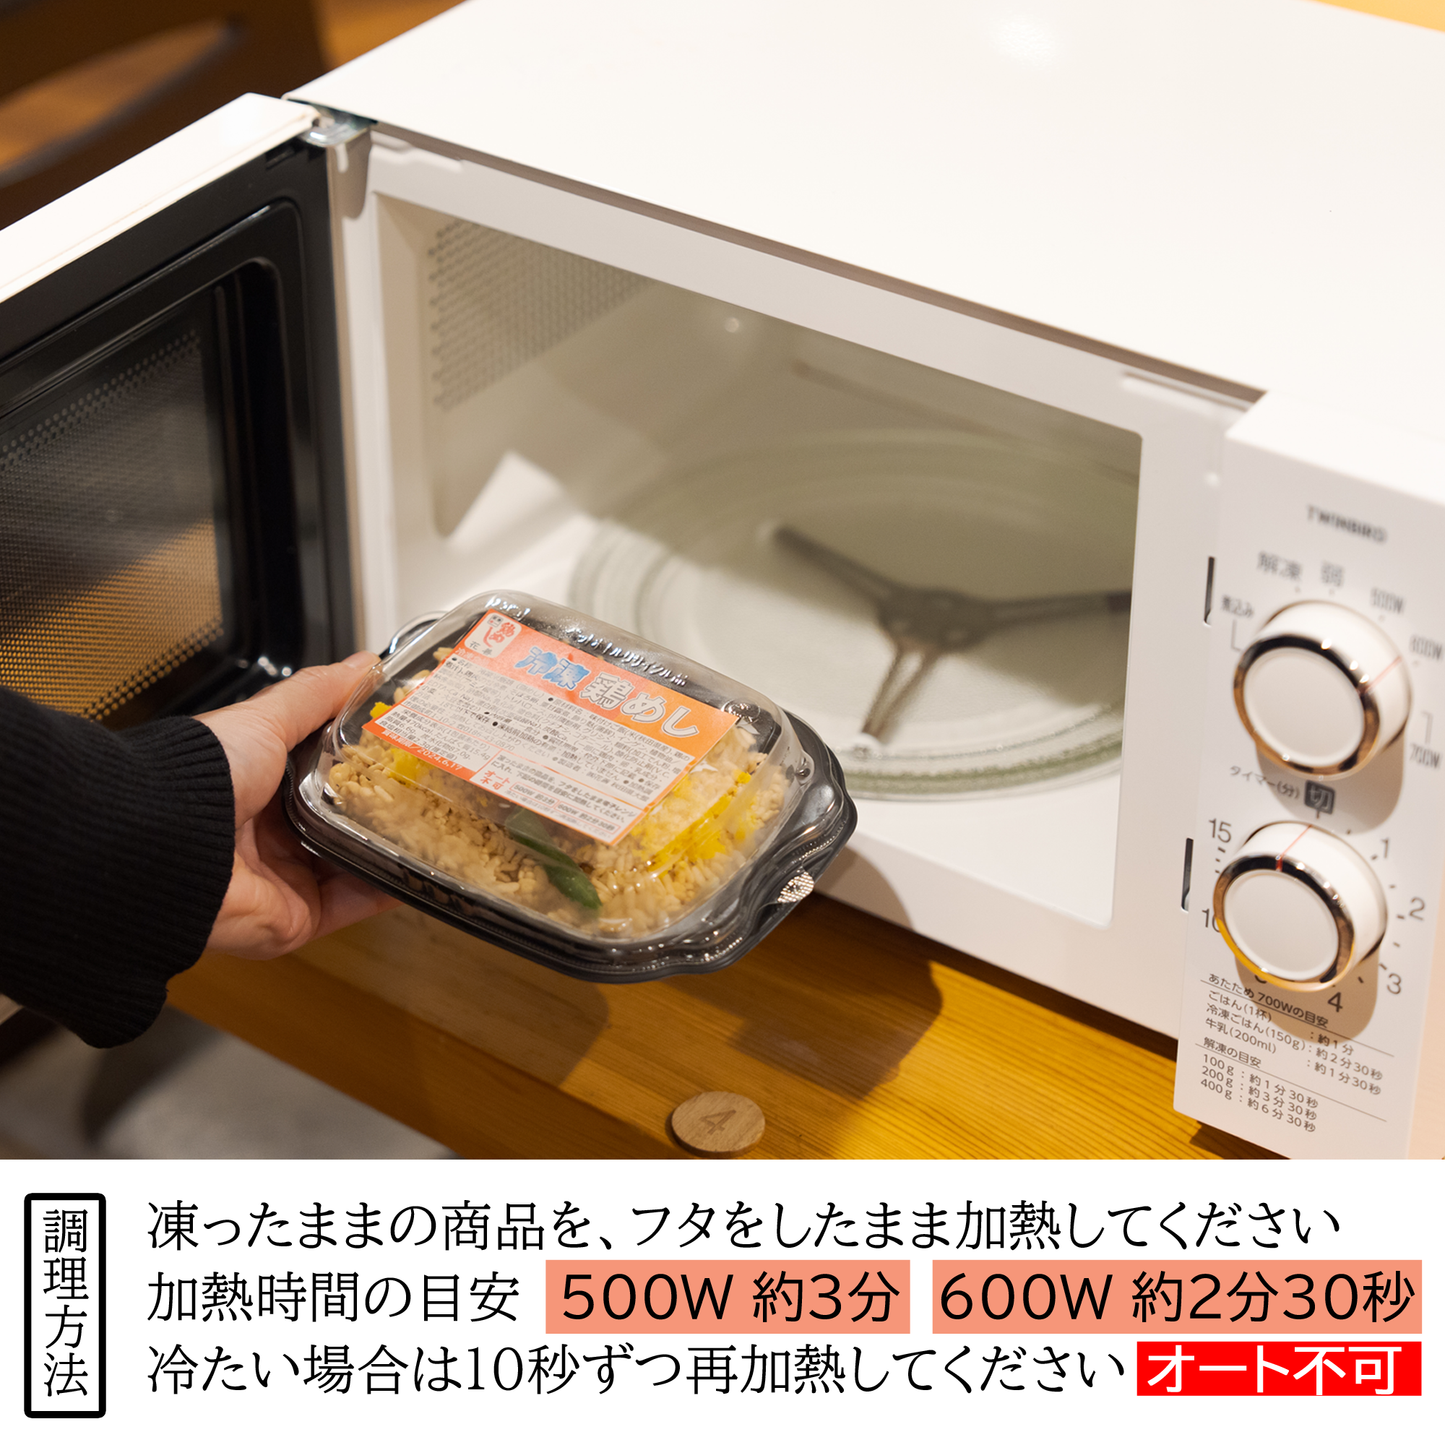 [6003]花善の選べる冷凍駅弁3個セット(送料込み)